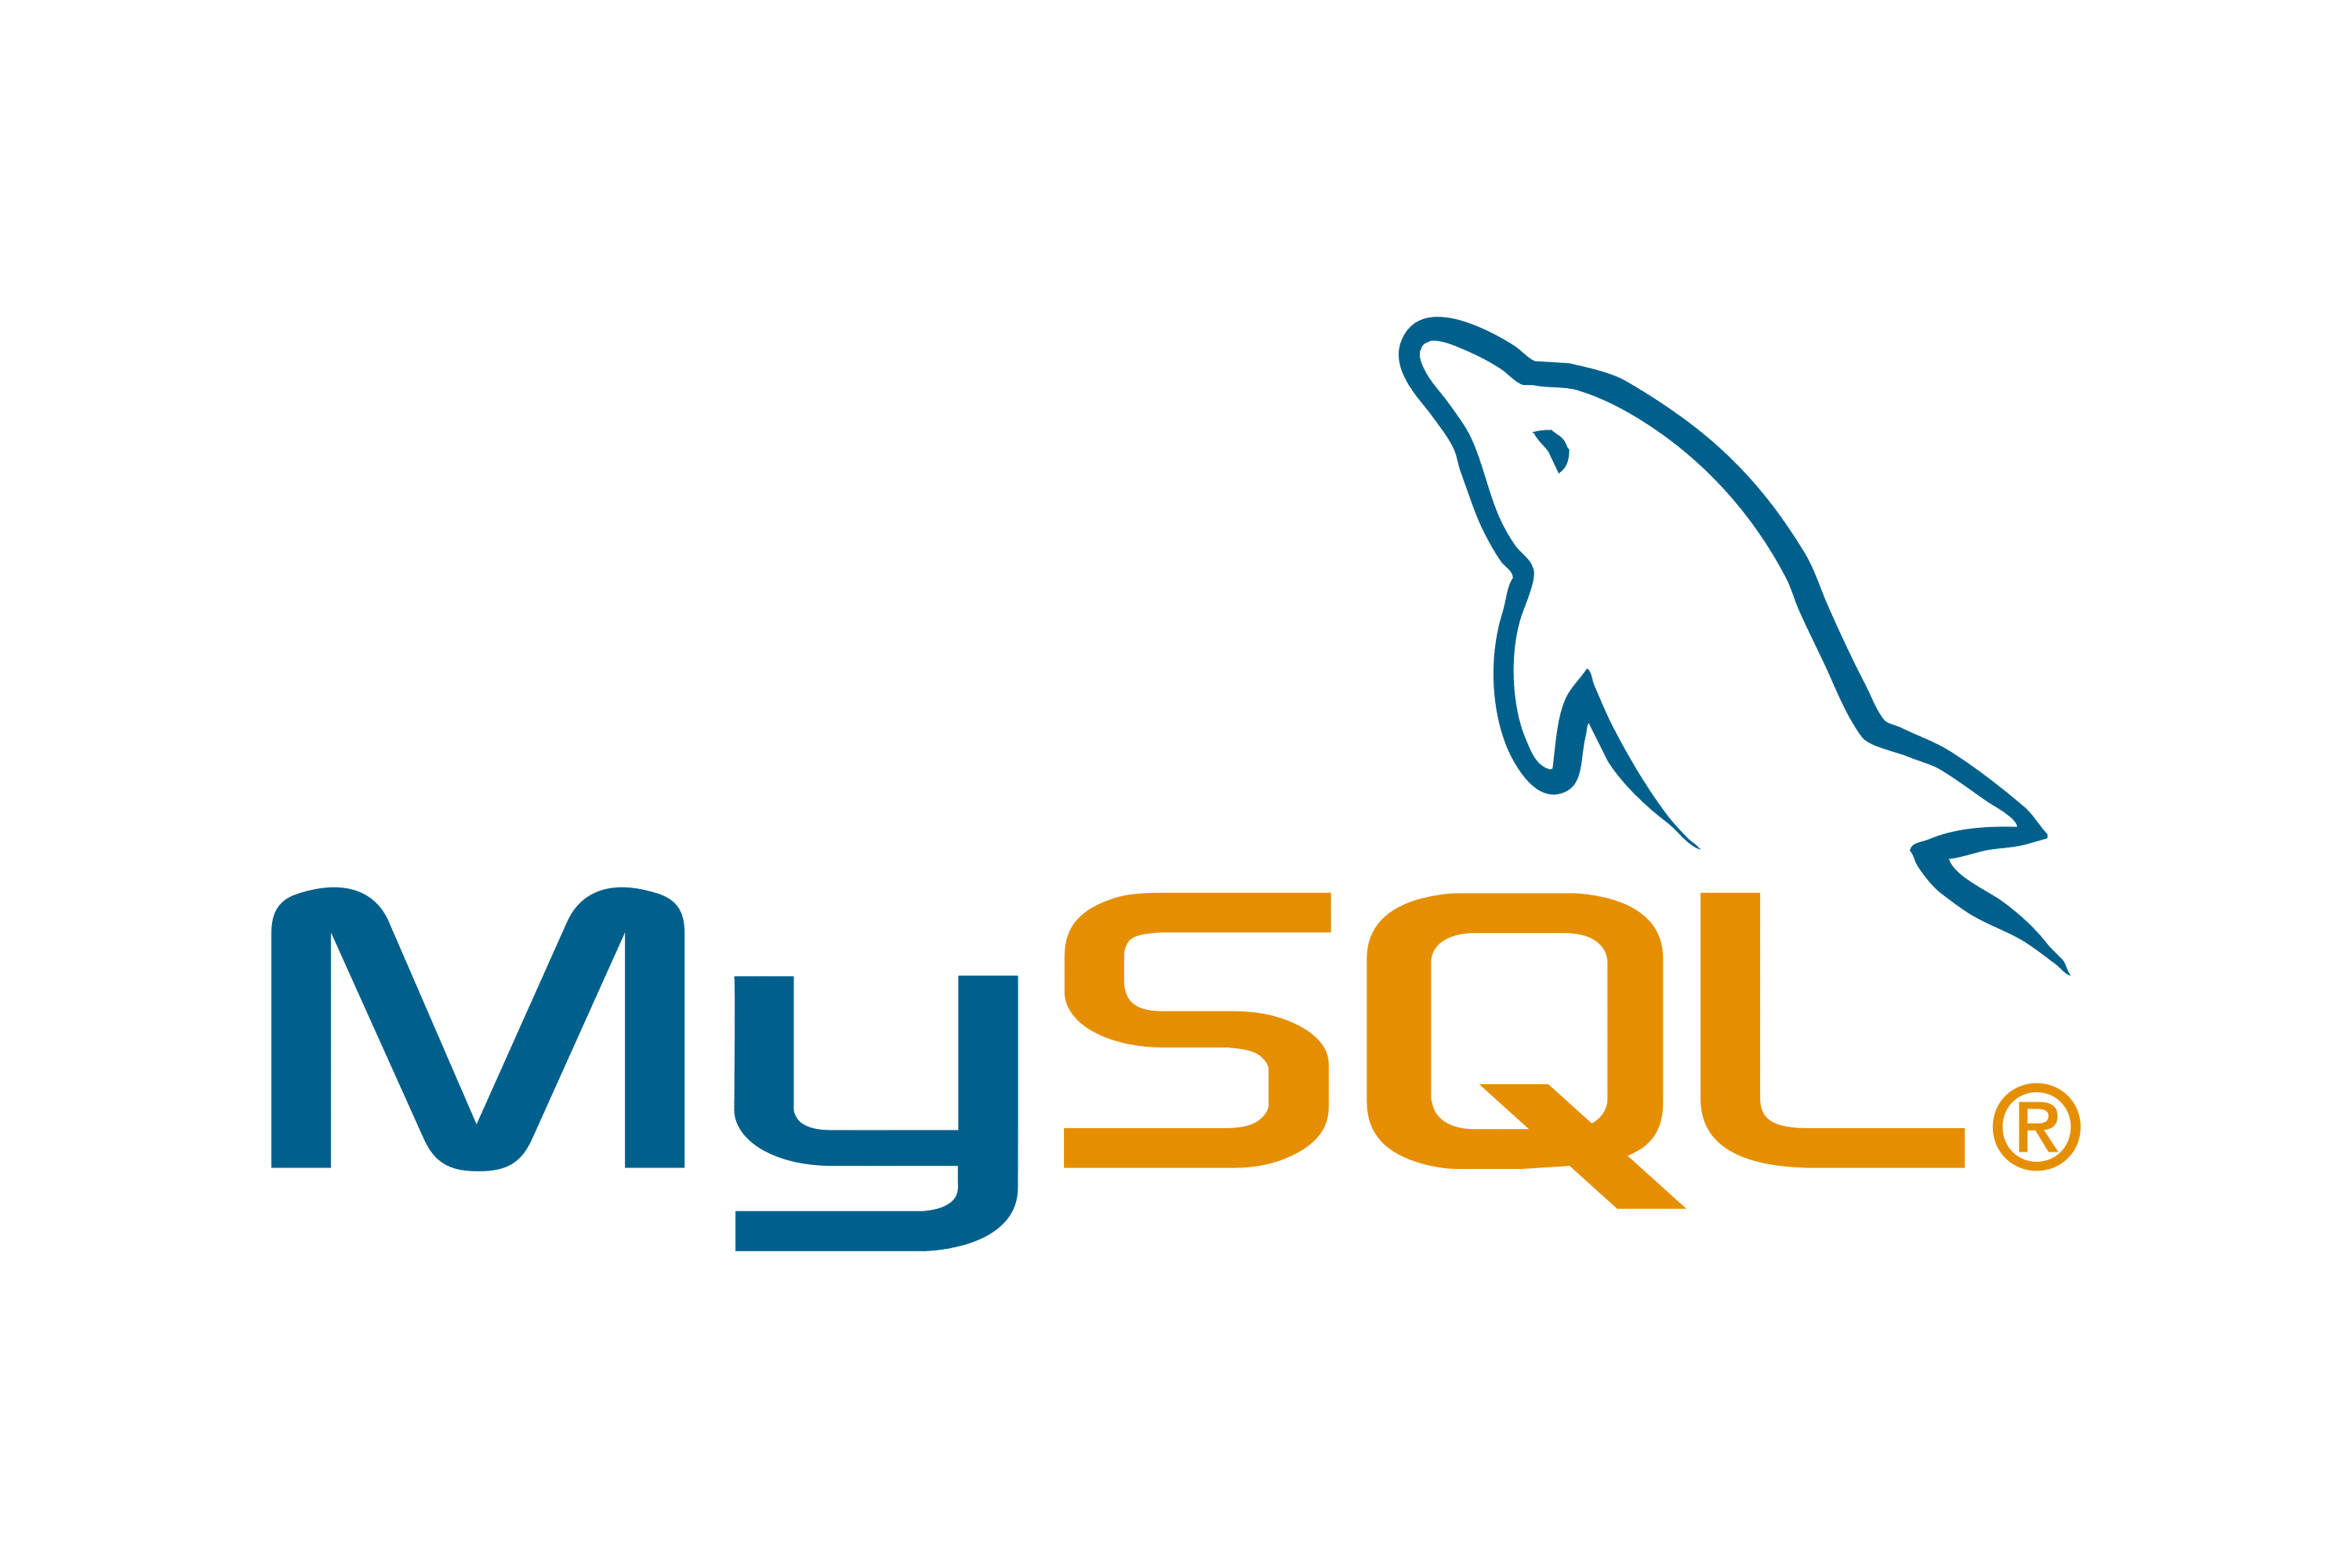 Il logo di MySQL, che mostra il testo sotto un corpo di delfino blu stilizzato e inclinato.